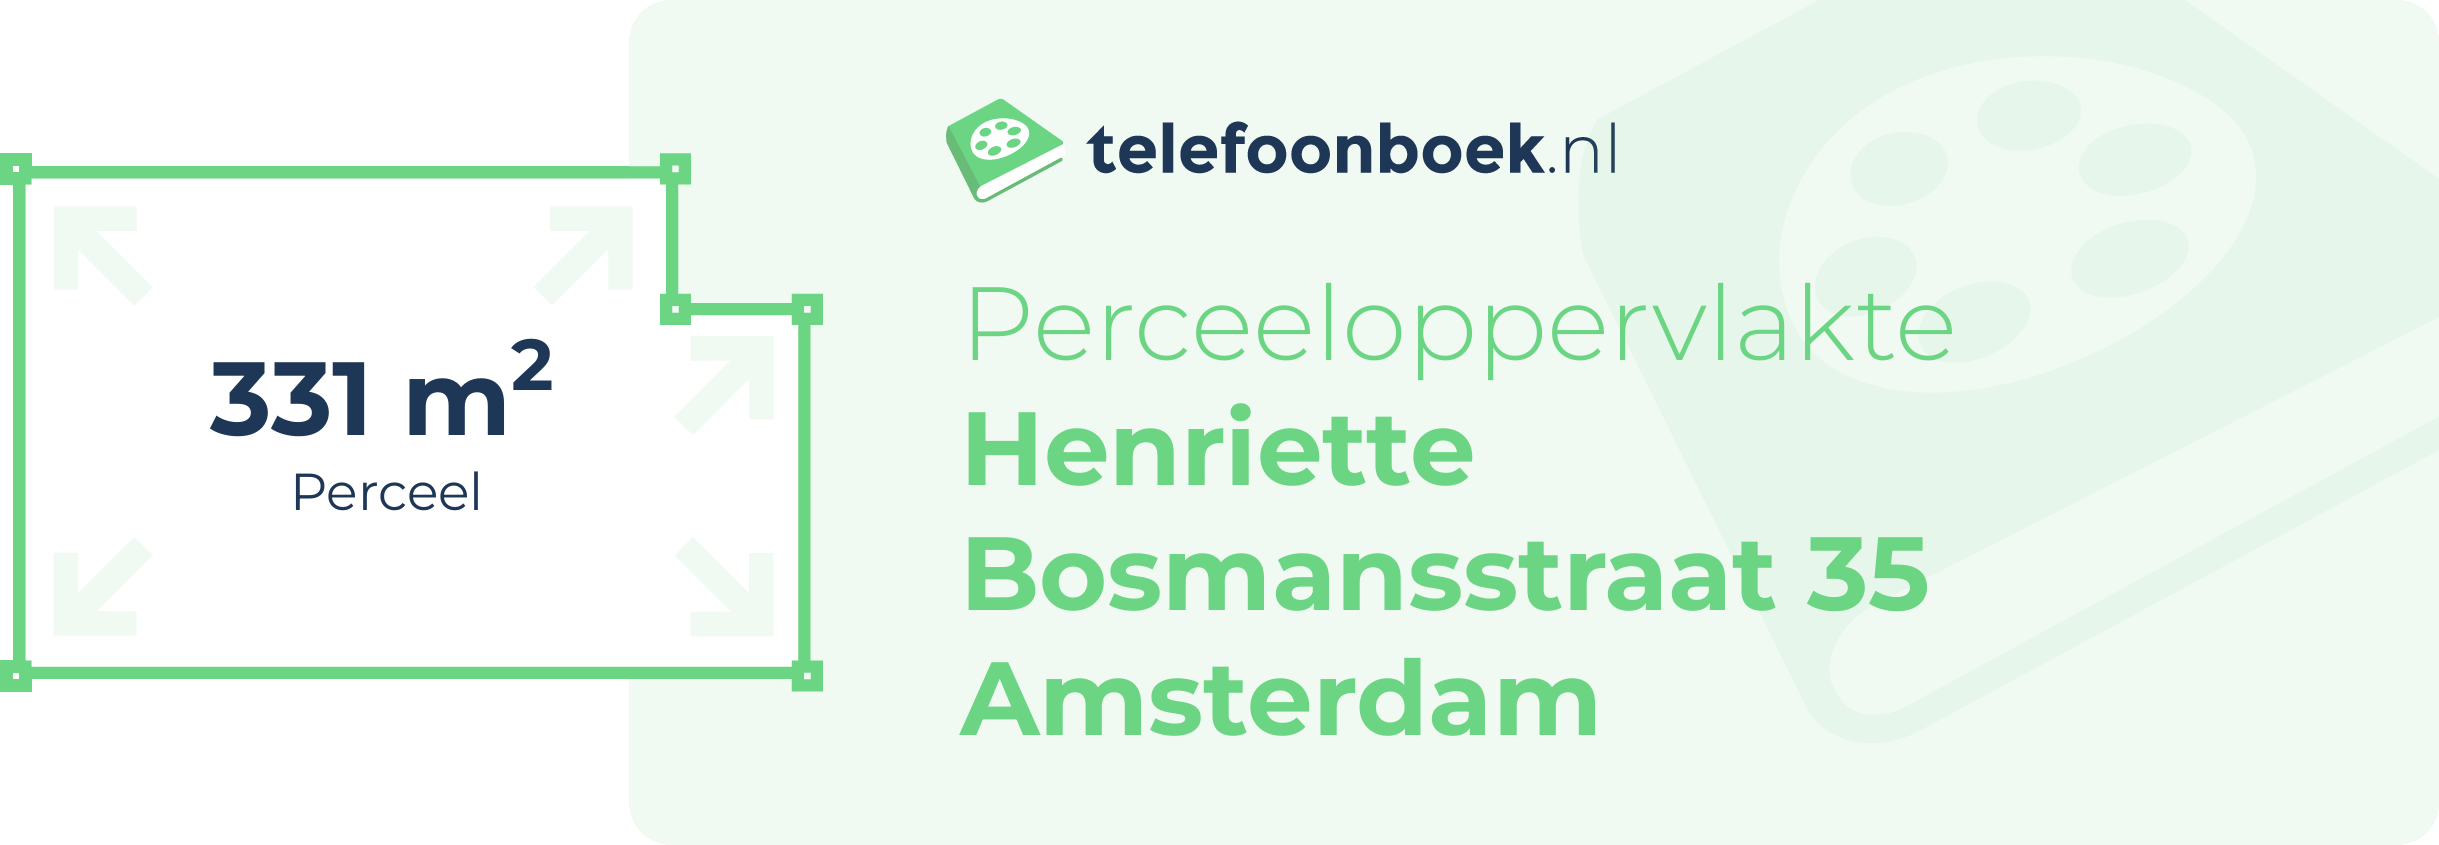 Perceeloppervlakte Henriette Bosmansstraat 35 Amsterdam